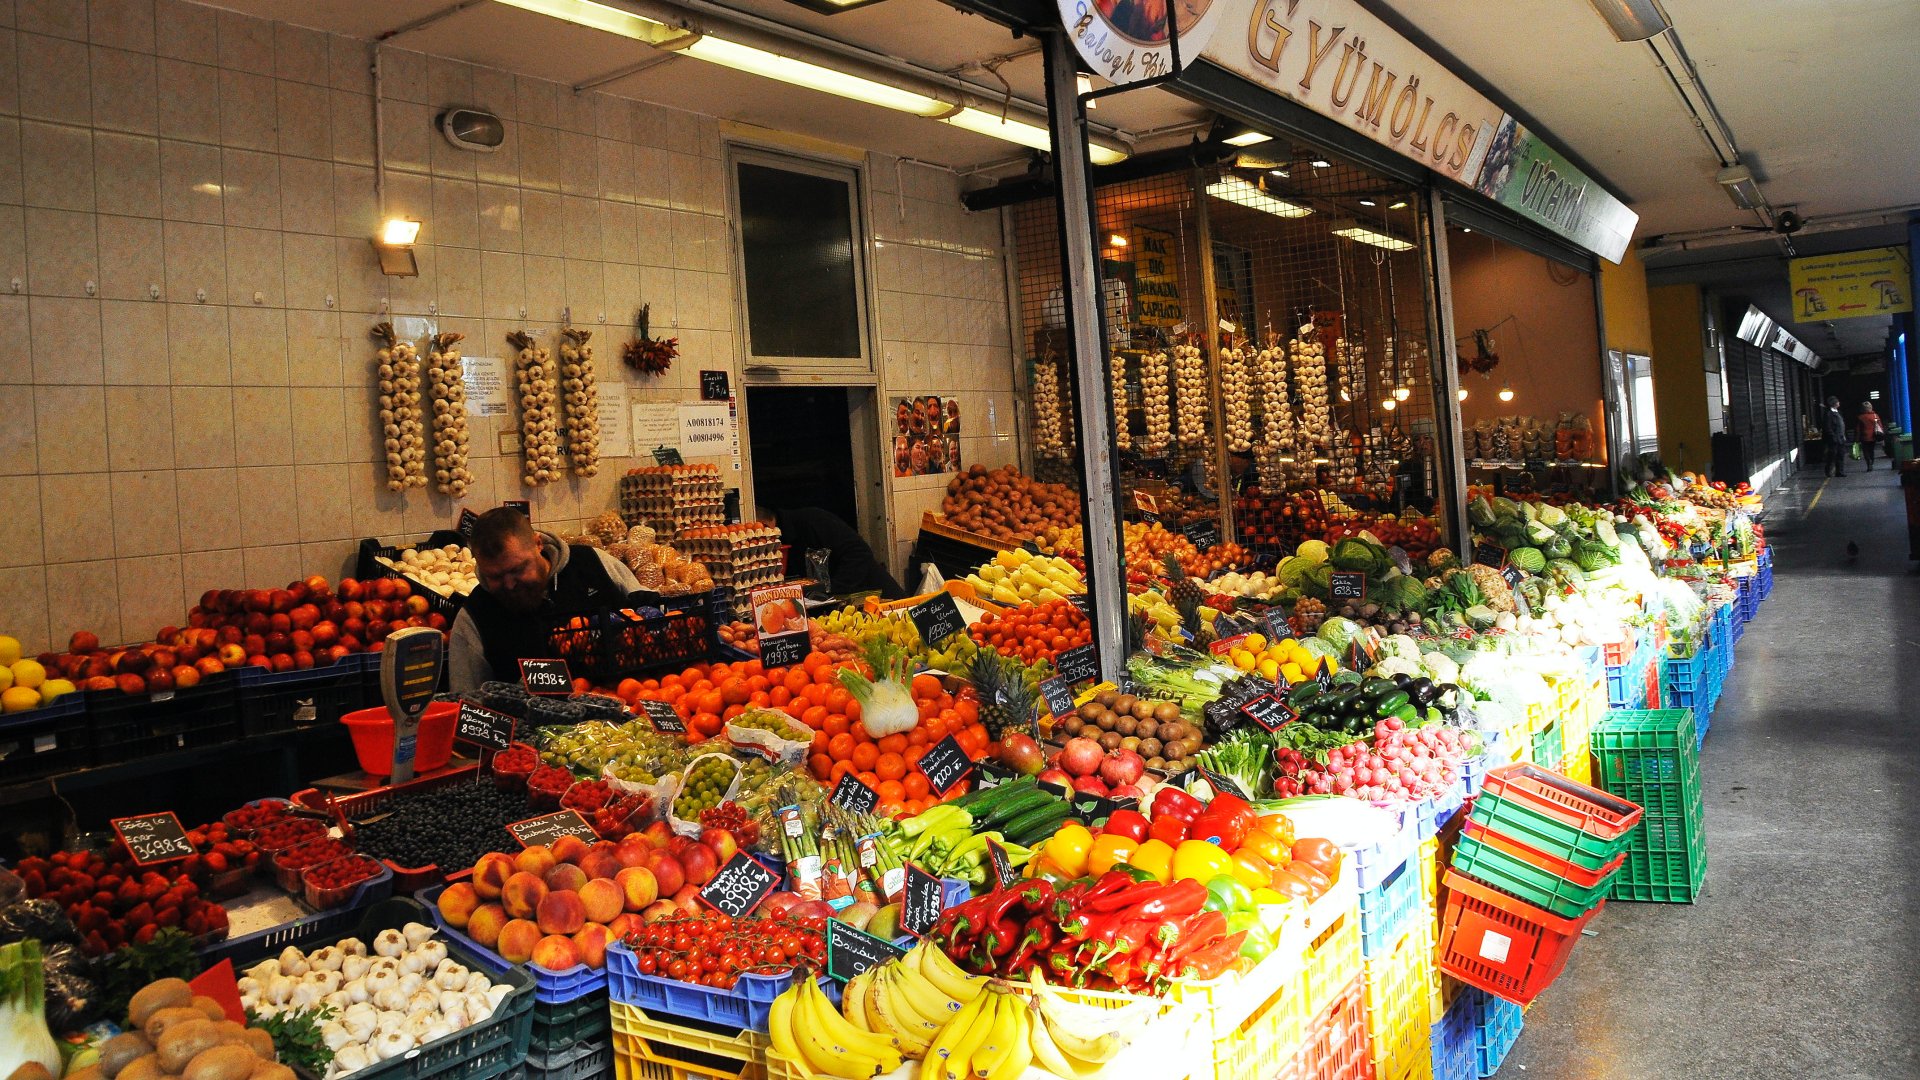 Zöldség- és gyümölcs kínálat a Fény utcai piacon, amely a fõváros II. kerületében a Lövõház-Fény és Retek utcák által határolt területen fekszik